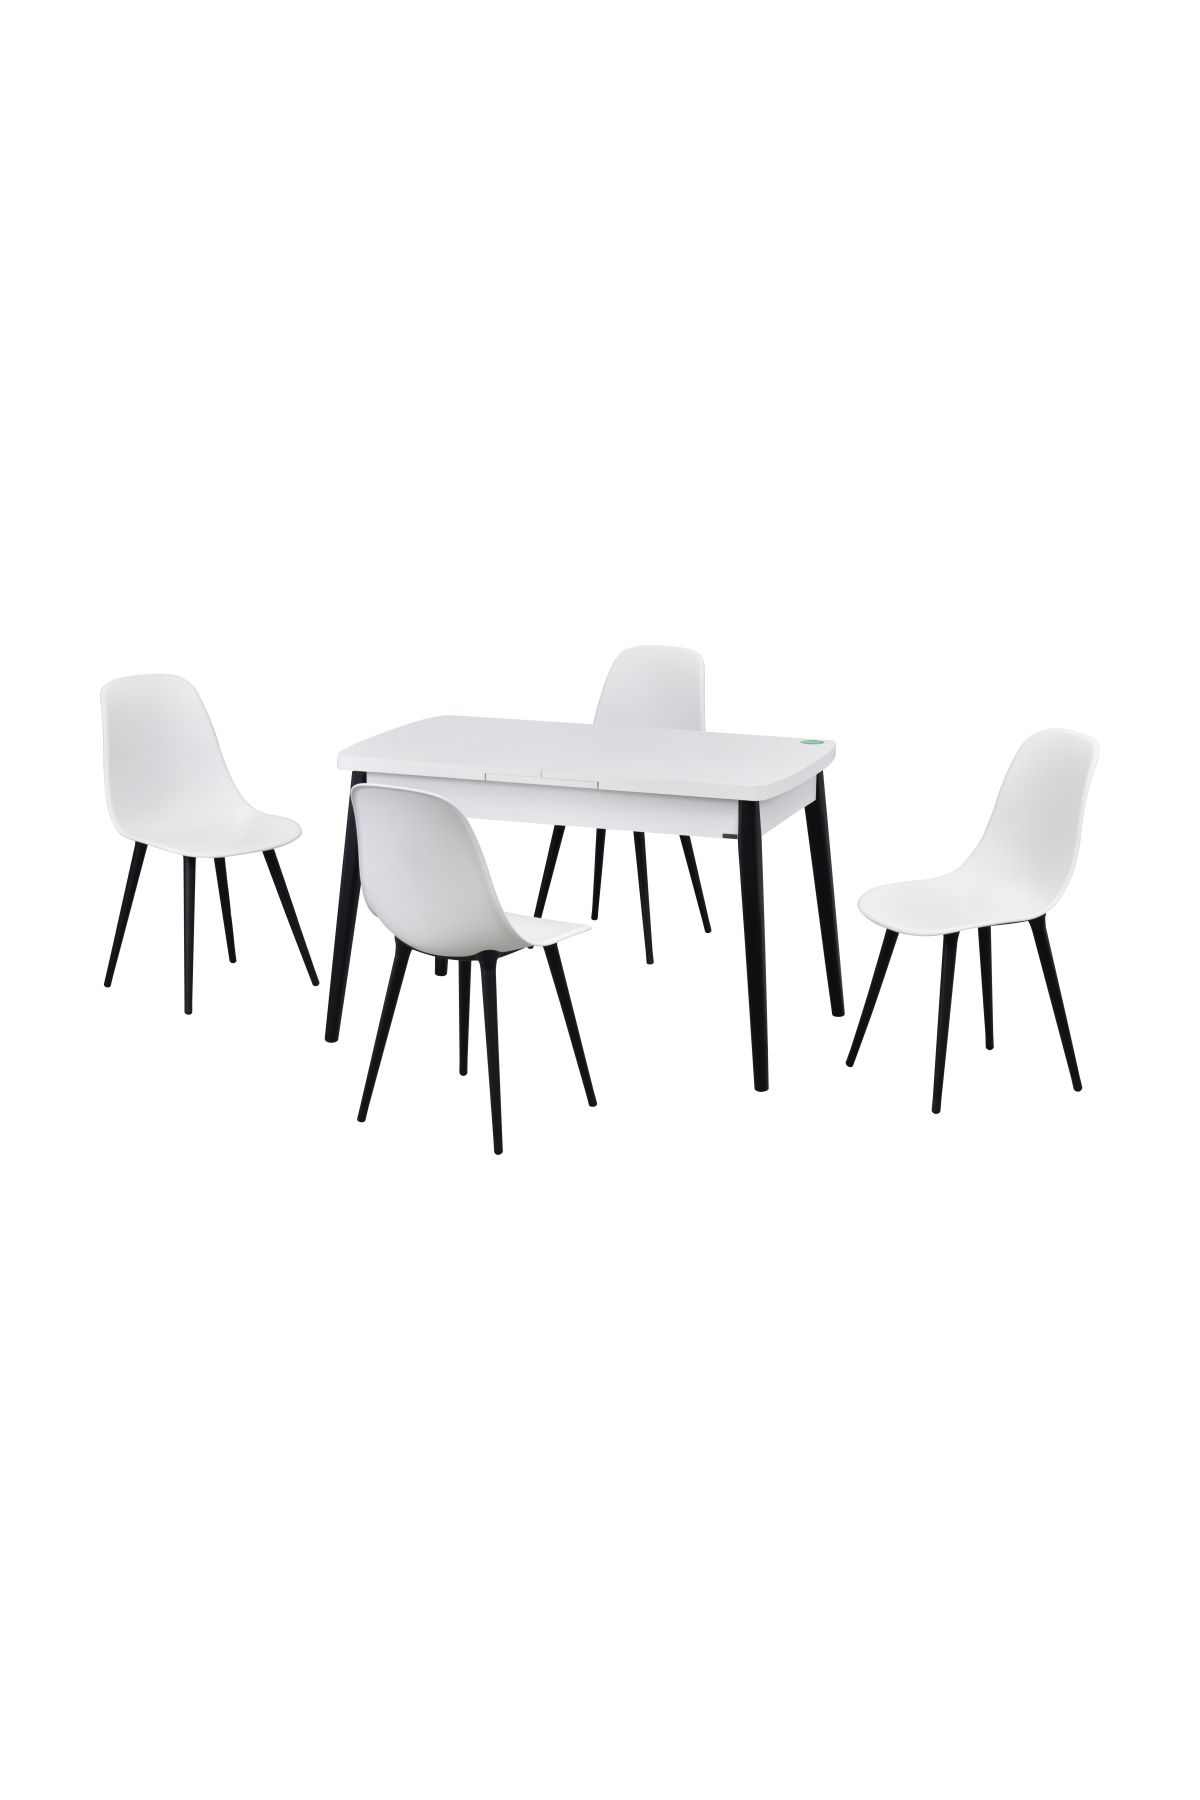 VİLİNZE Vilinze Eames Sandalye Avanos Ahşap MDF Açılır Mutfak Masası Takımı - 70x120+30 cm